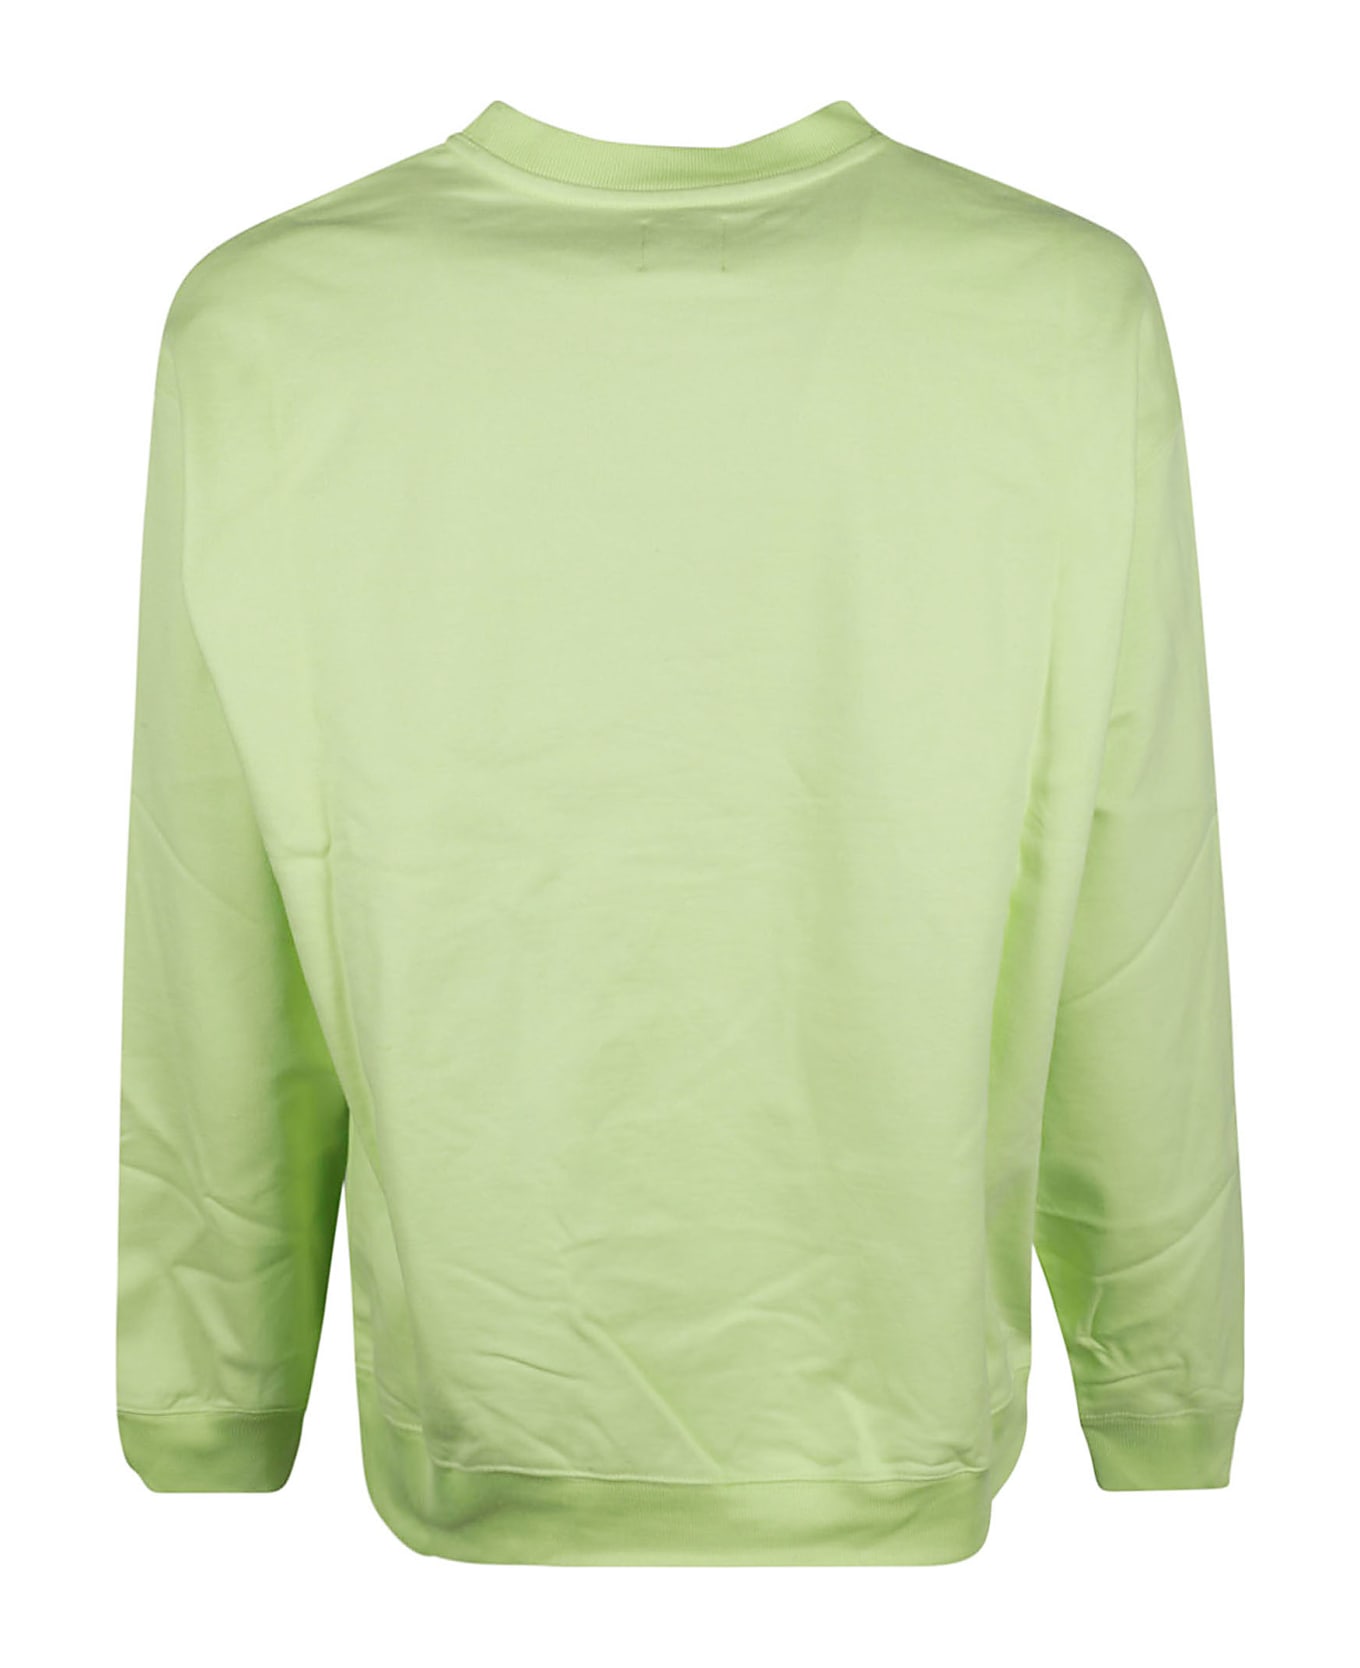 PACCBET Printed Sweatshirt - Green